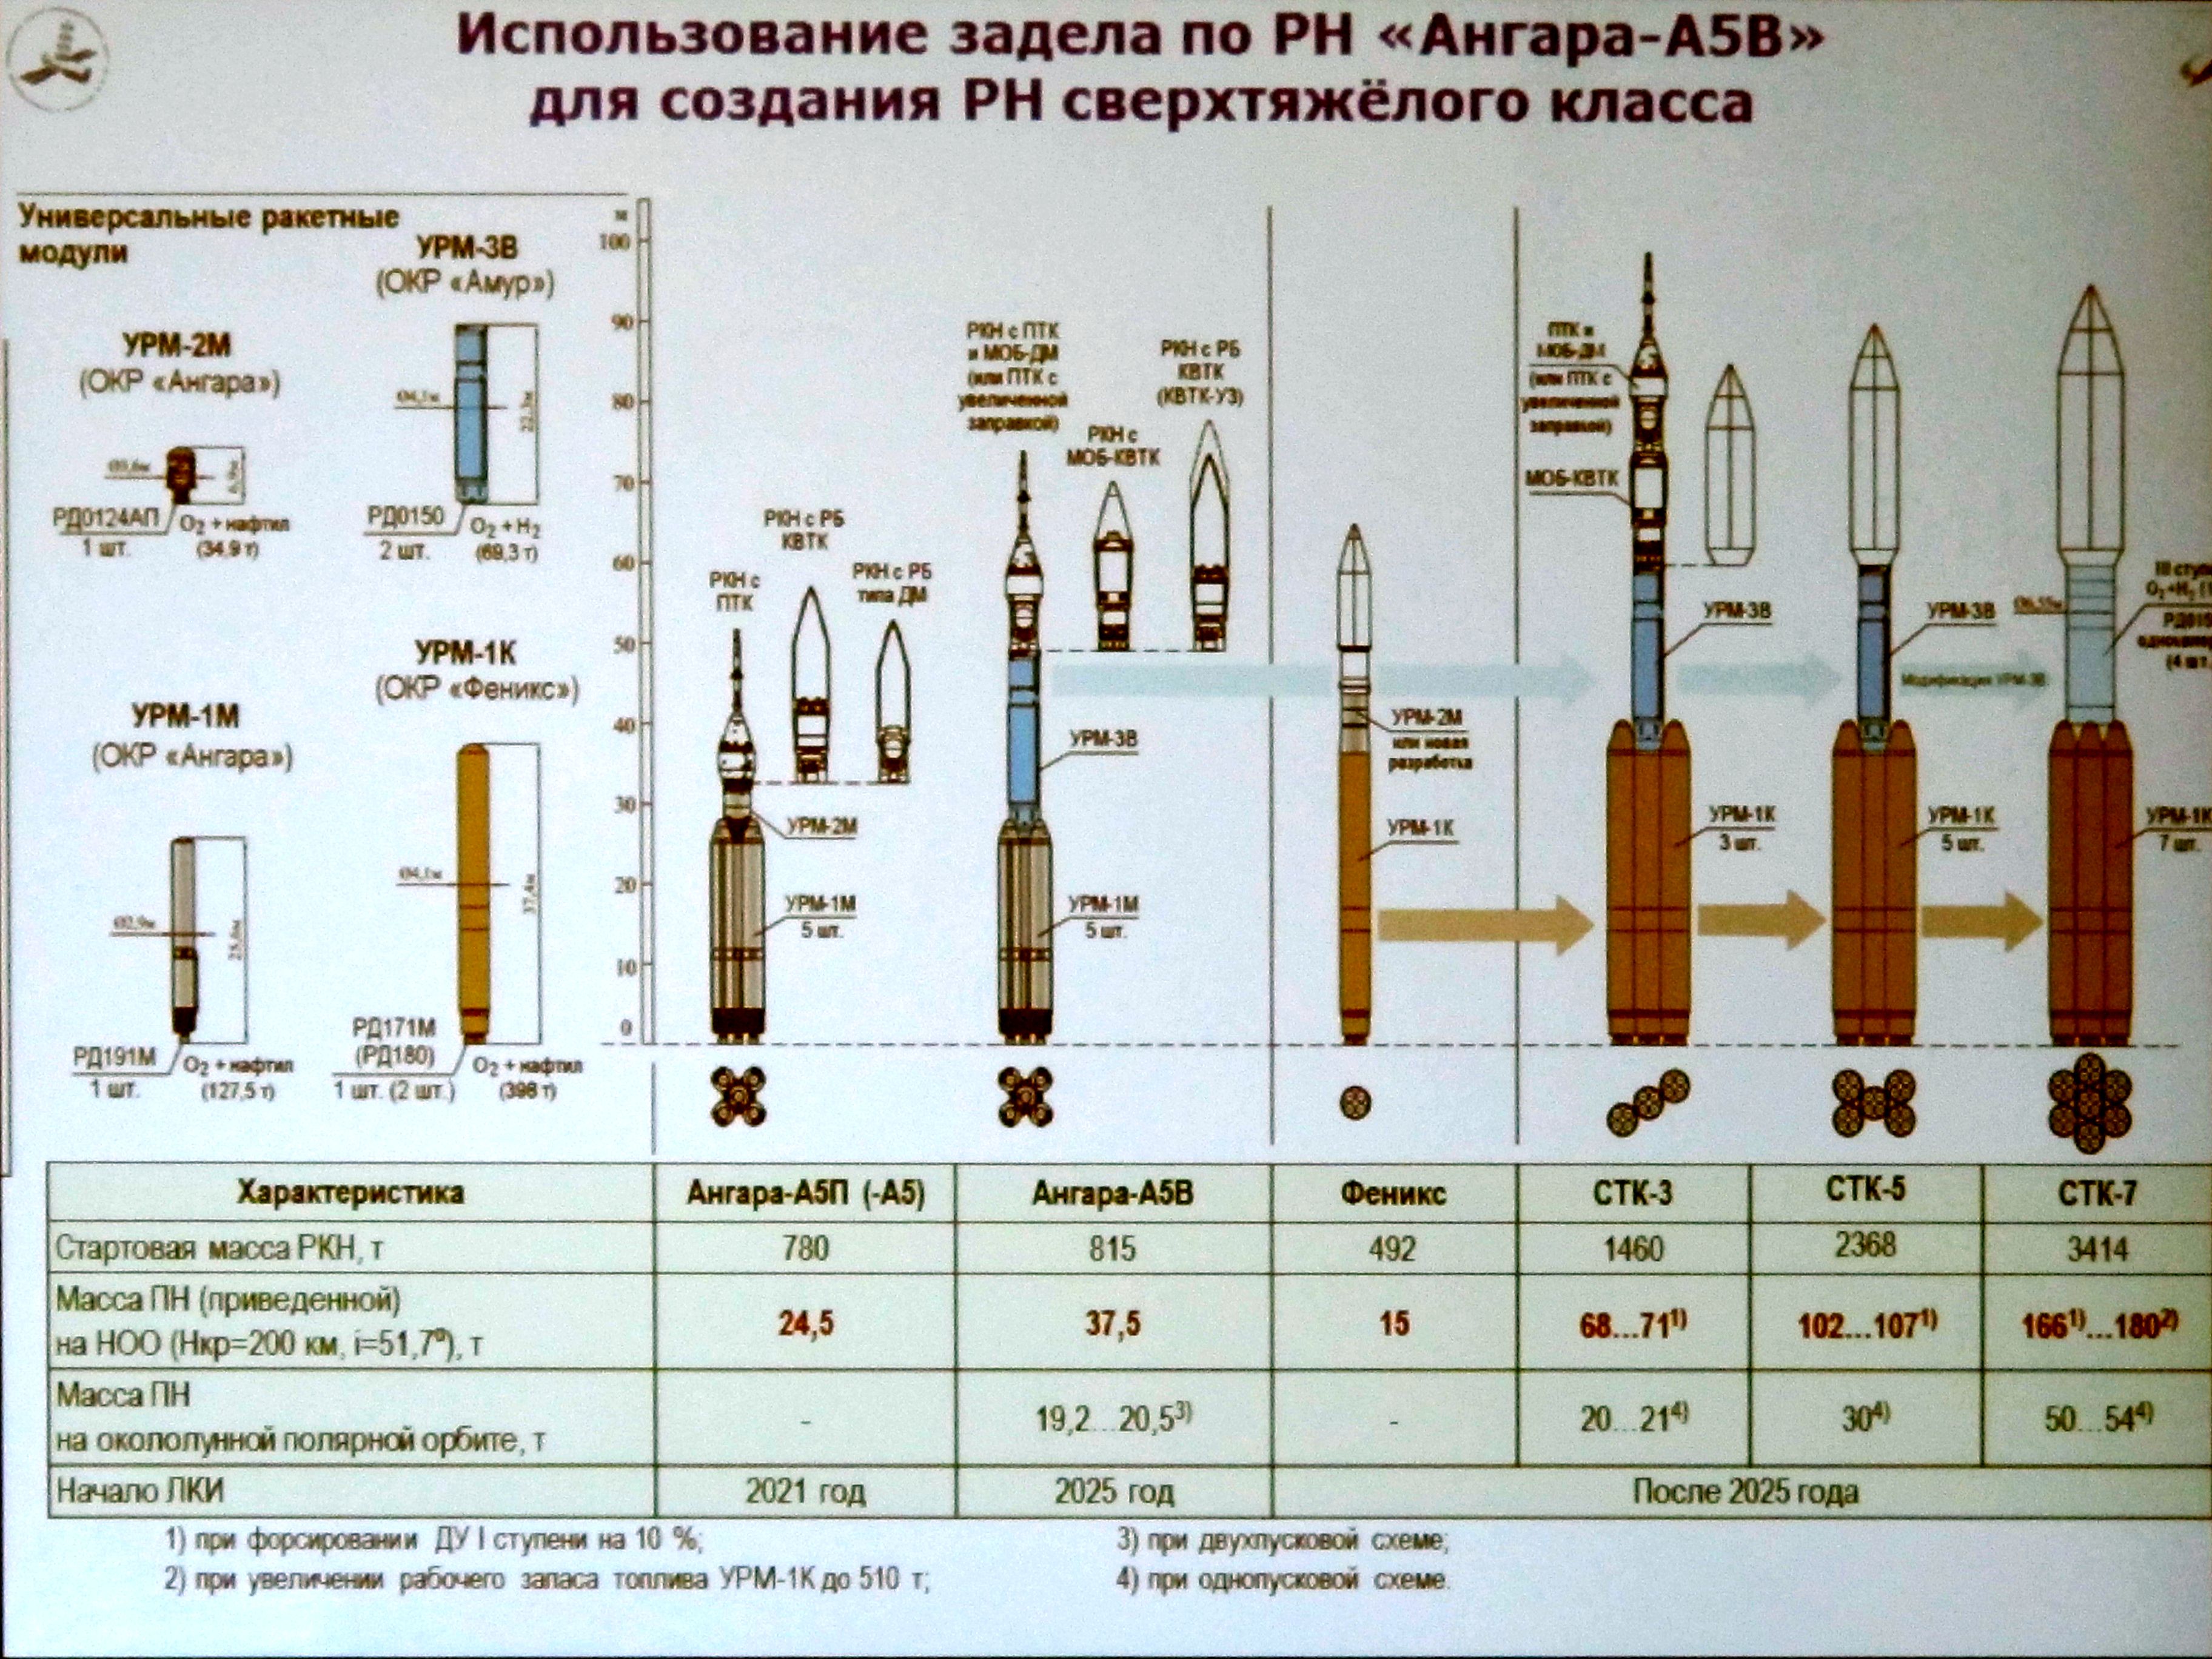 Ангара 5 ракета носитель характеристики